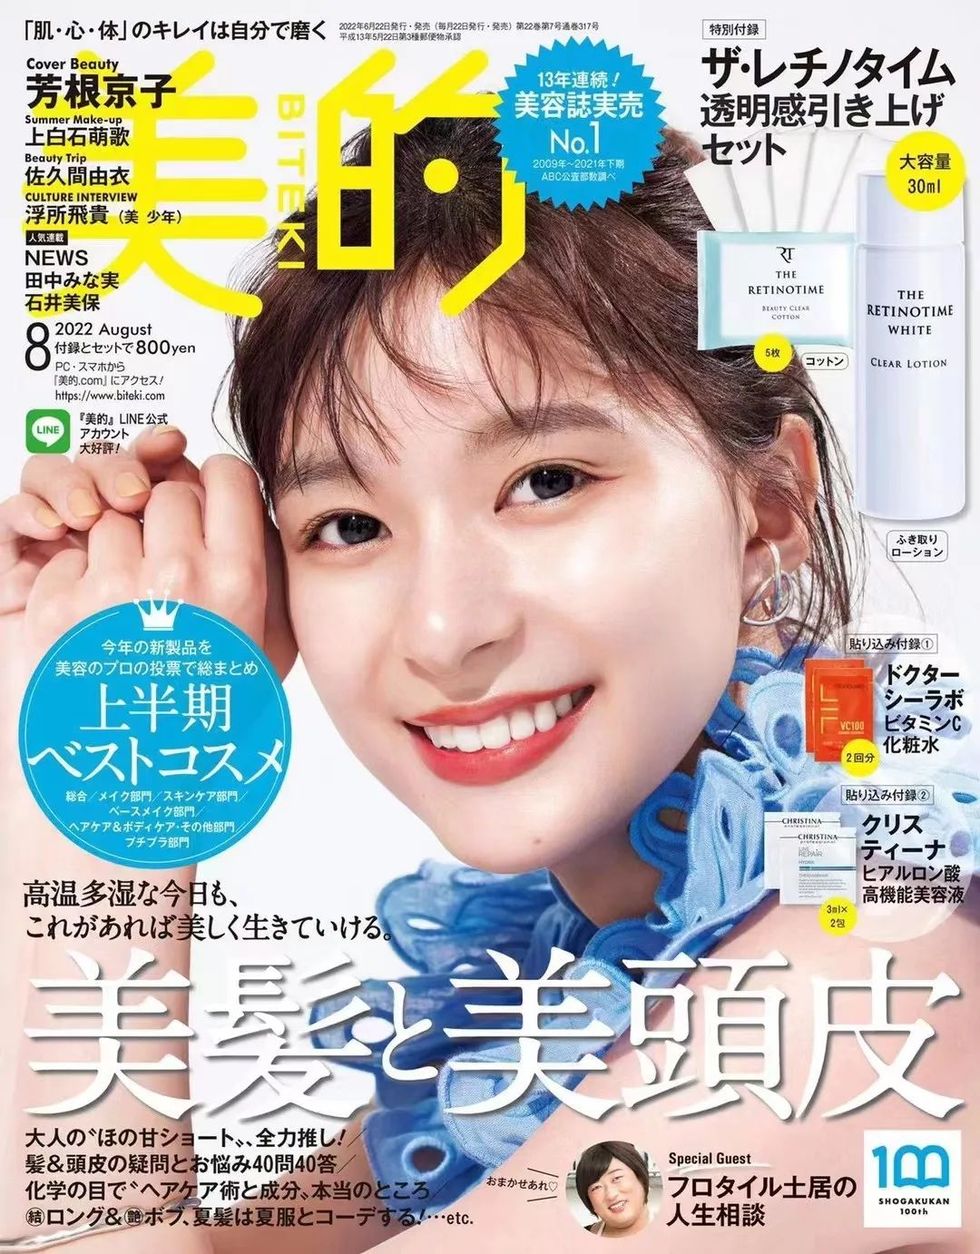 日本高端美容杂志《美的biteki》